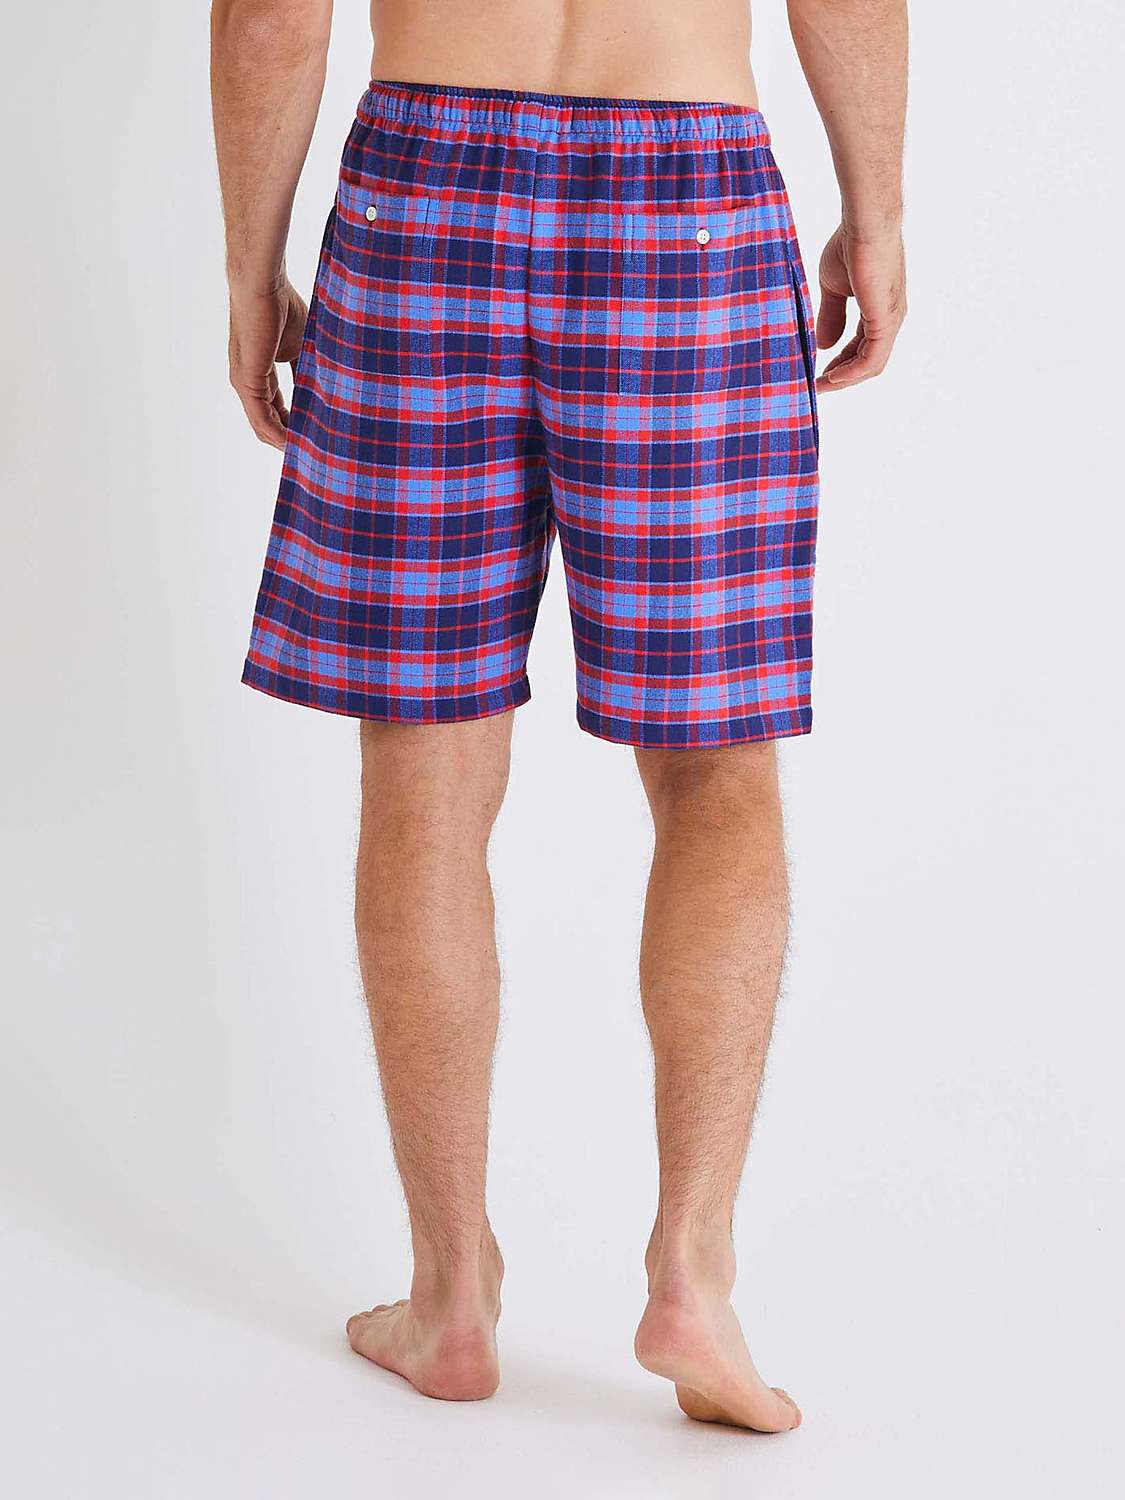 Buy British Boxers Tartan Print Brushed Cotton Pyjama Shorts Online at johnlewis.com